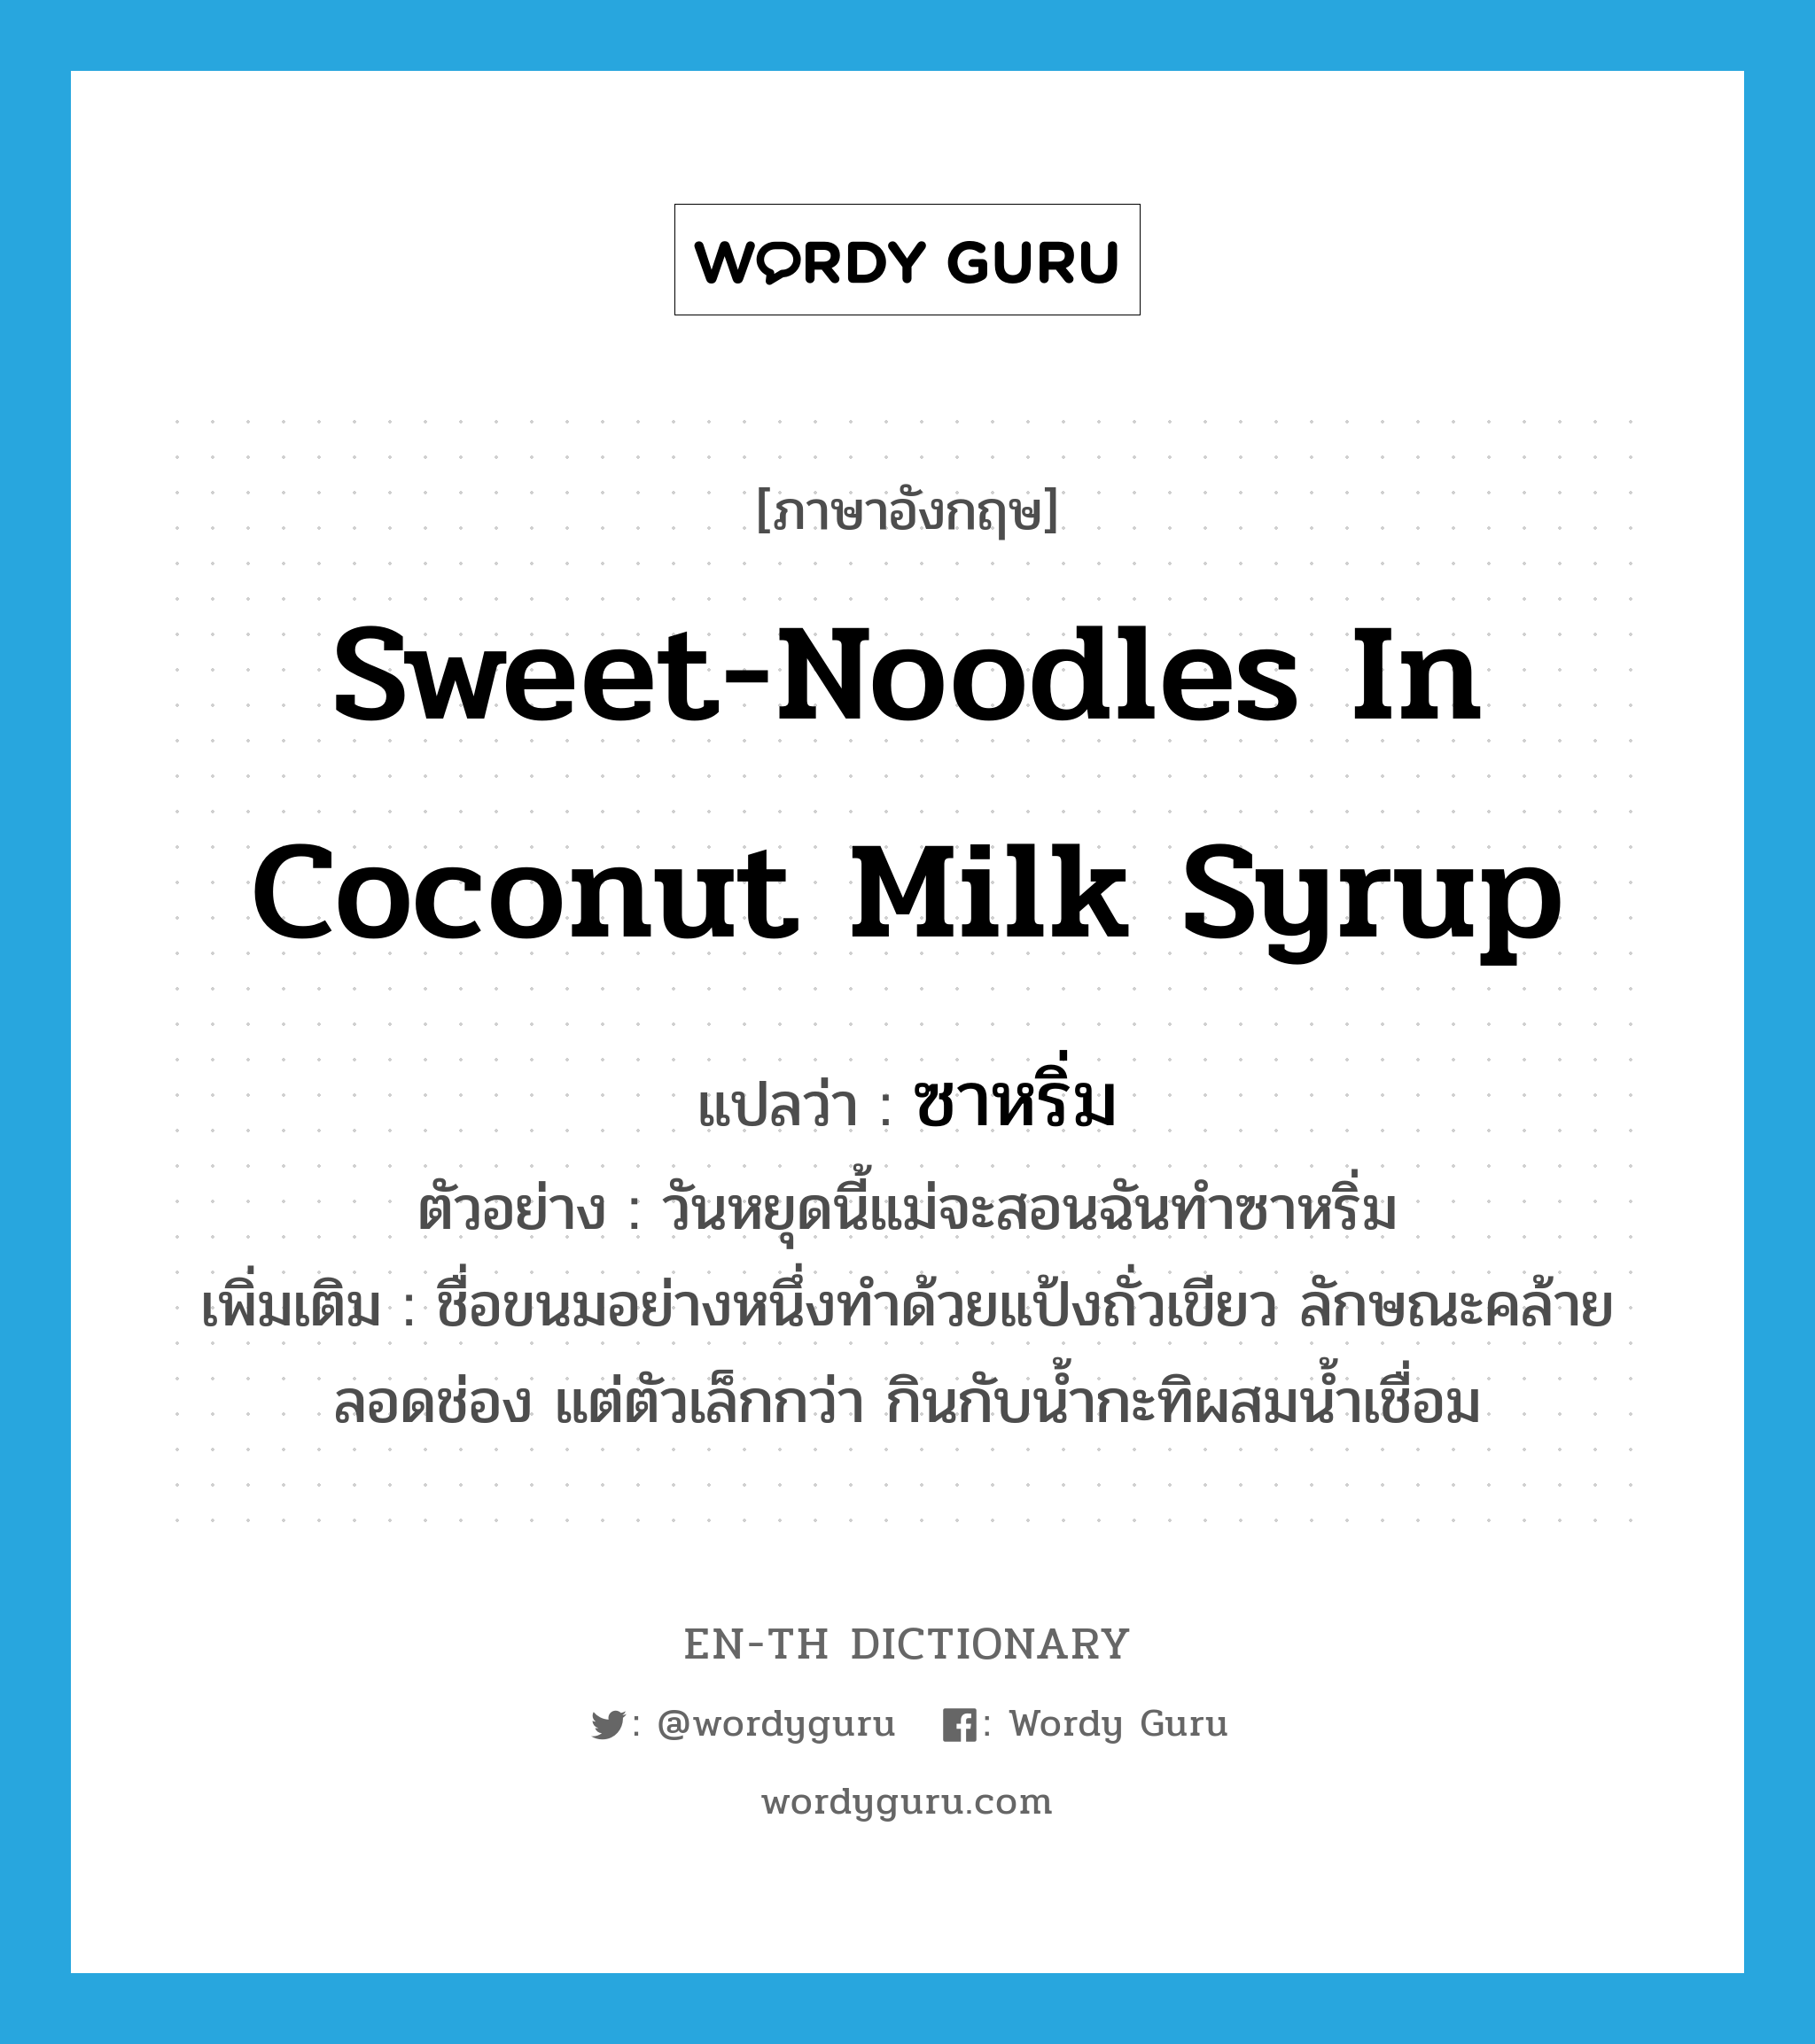 ซาหริ่ม ภาษาอังกฤษ?, คำศัพท์ภาษาอังกฤษ ซาหริ่ม แปลว่า sweet-noodles in coconut milk syrup ประเภท N ตัวอย่าง วันหยุดนี้แม่จะสอนฉันทำซาหริ่ม เพิ่มเติม ชื่อขนมอย่างหนึ่งทำด้วยแป้งถั่วเขียว ลักษณะคล้ายลอดช่อง แต่ตัวเล็กกว่า กินกับน้ำกะทิผสมน้ำเชื่อม หมวด N